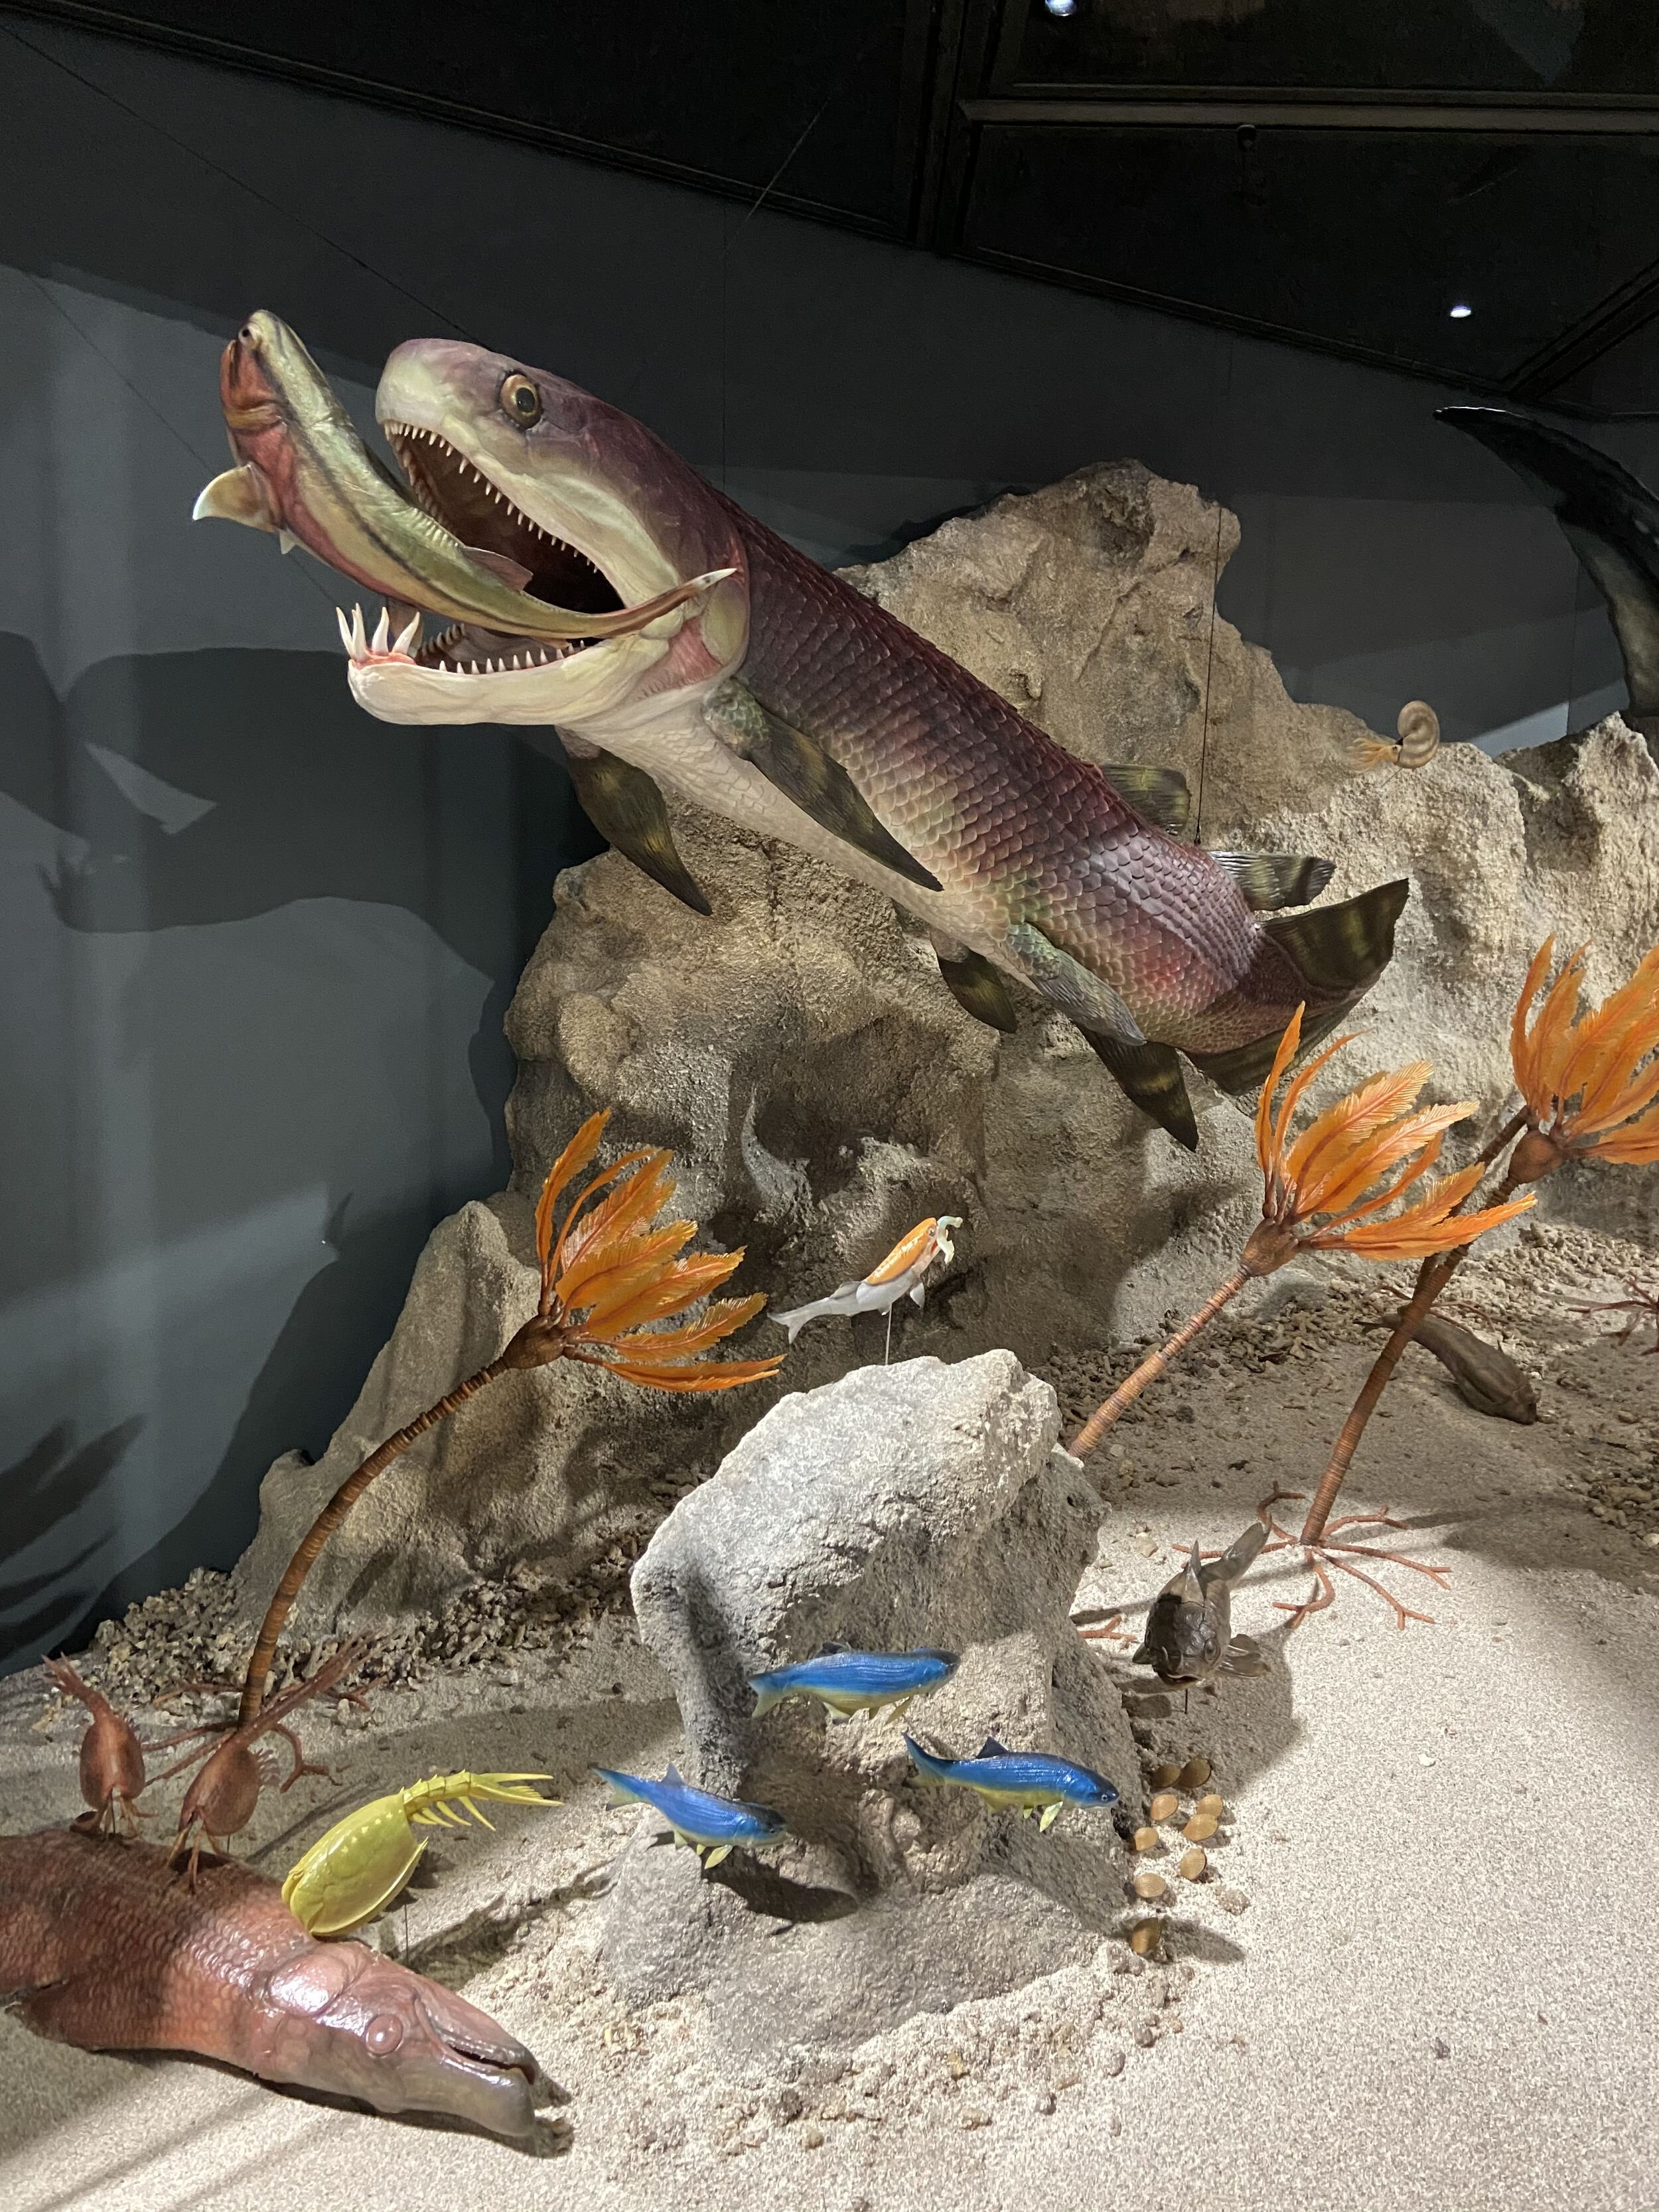 保存异常完好的泥盆纪盾皮鱼软组织器官化石揭示对颌类脊椎动物早期演化新见解